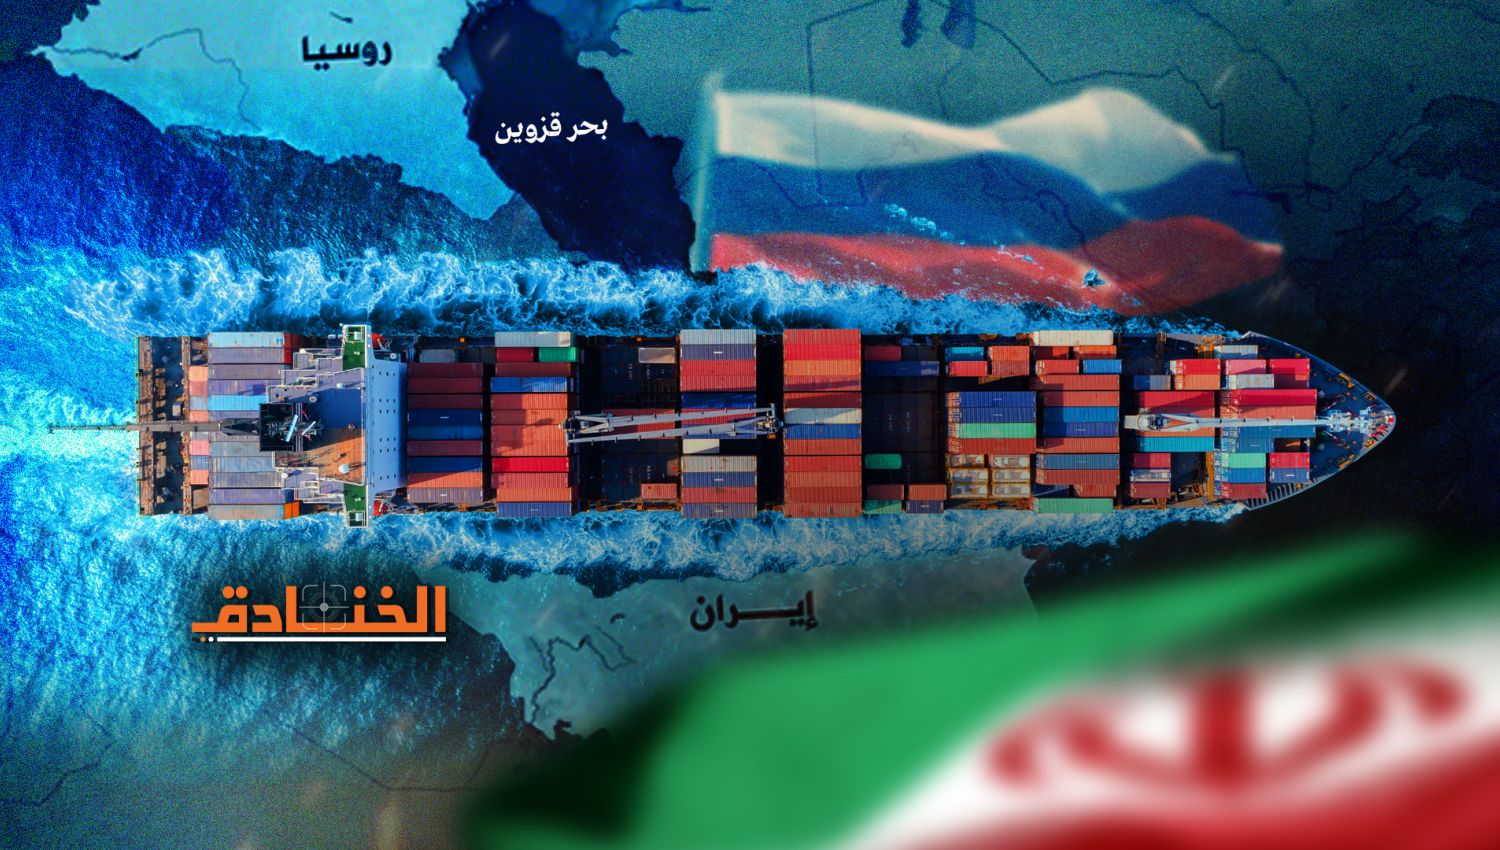 توسيع التجارة البحرية بين إيران وروسيا في بحر قزوين: القدرات والتحديات